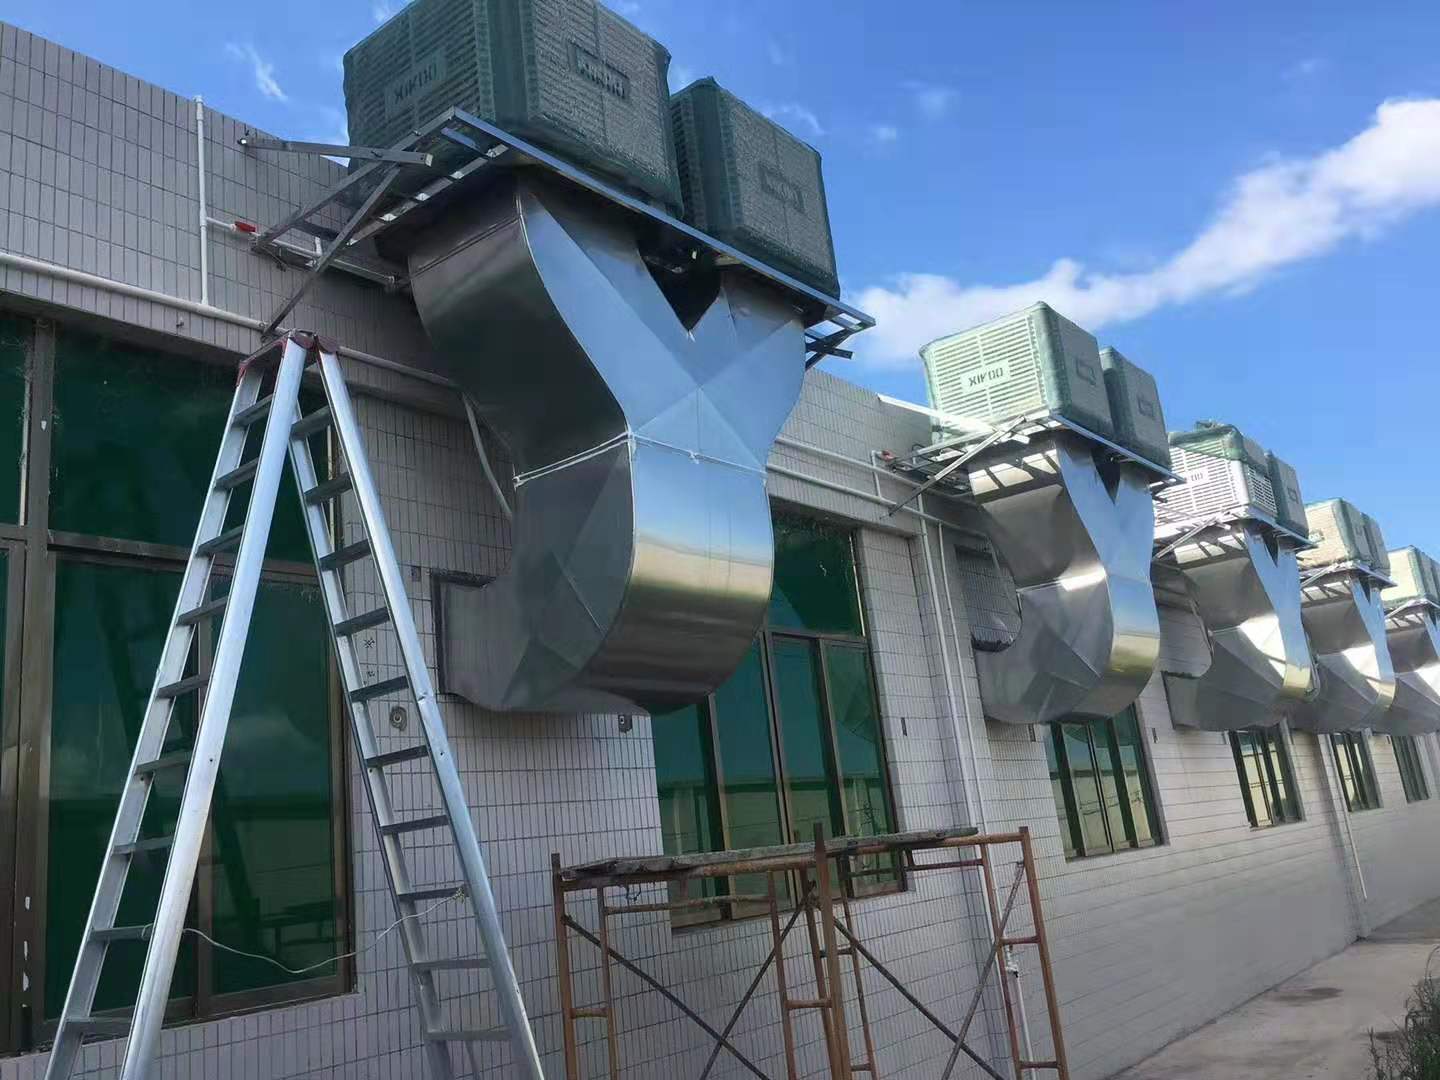 XIKOO luftkylare ger kyla och ventilation till verkstaden